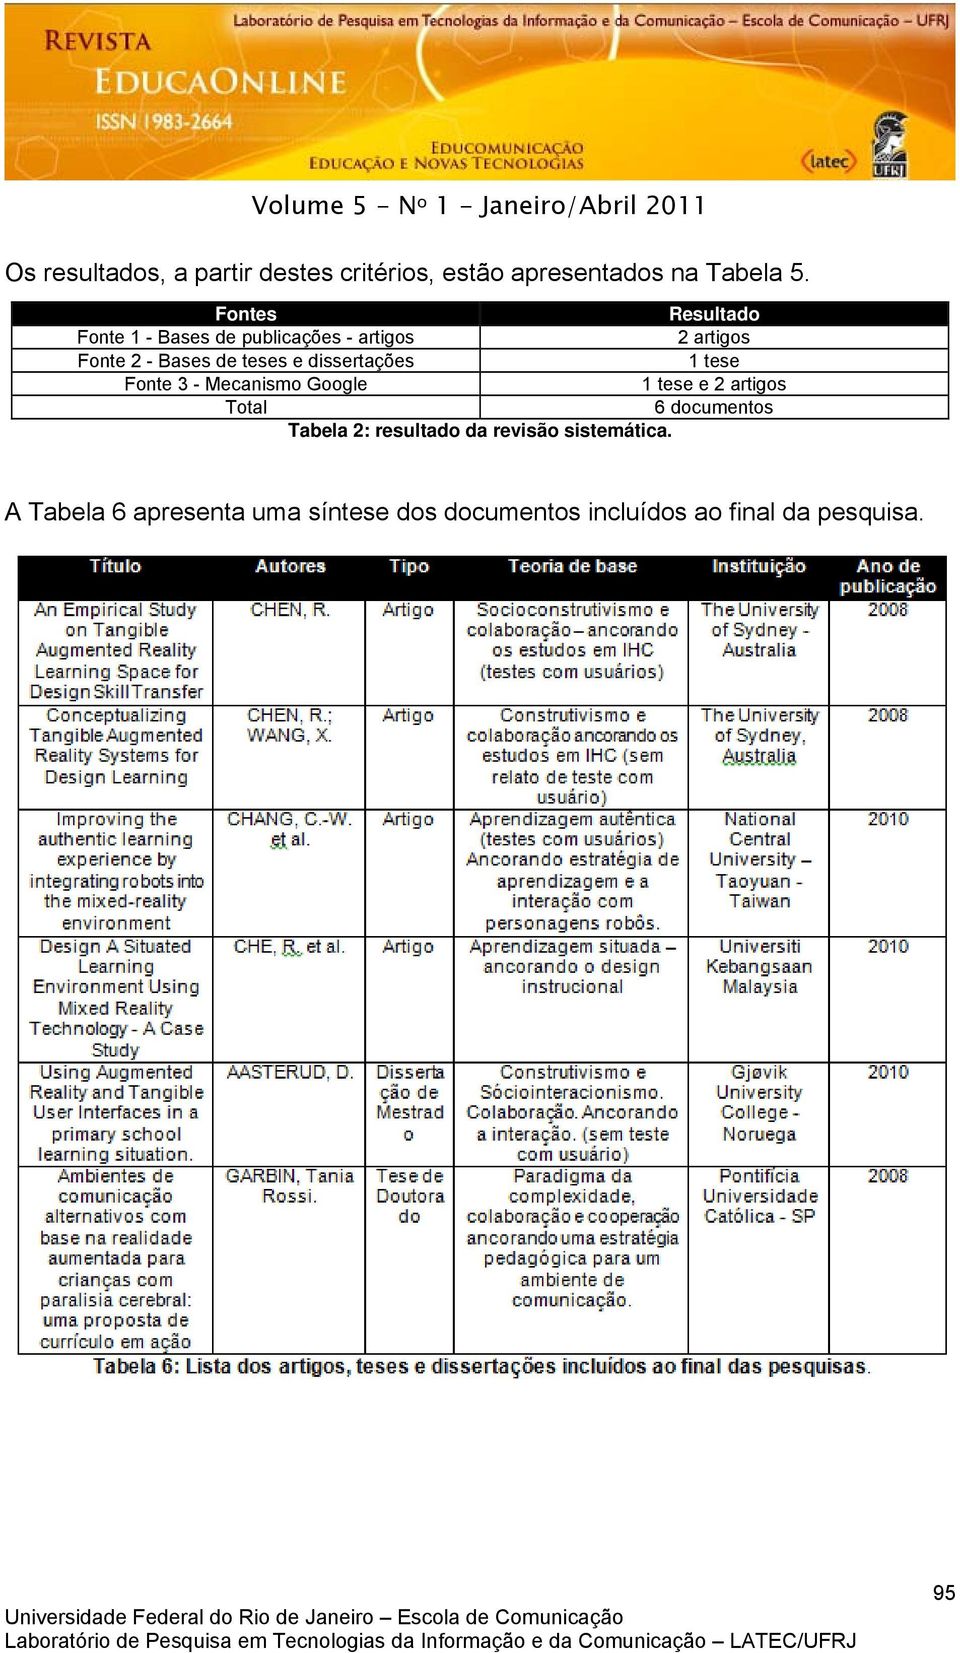 dissertações 1 tese Fonte 3 - Mecanismo Google 1 tese e 2 artigos Total 6 documentos Tabela 2: